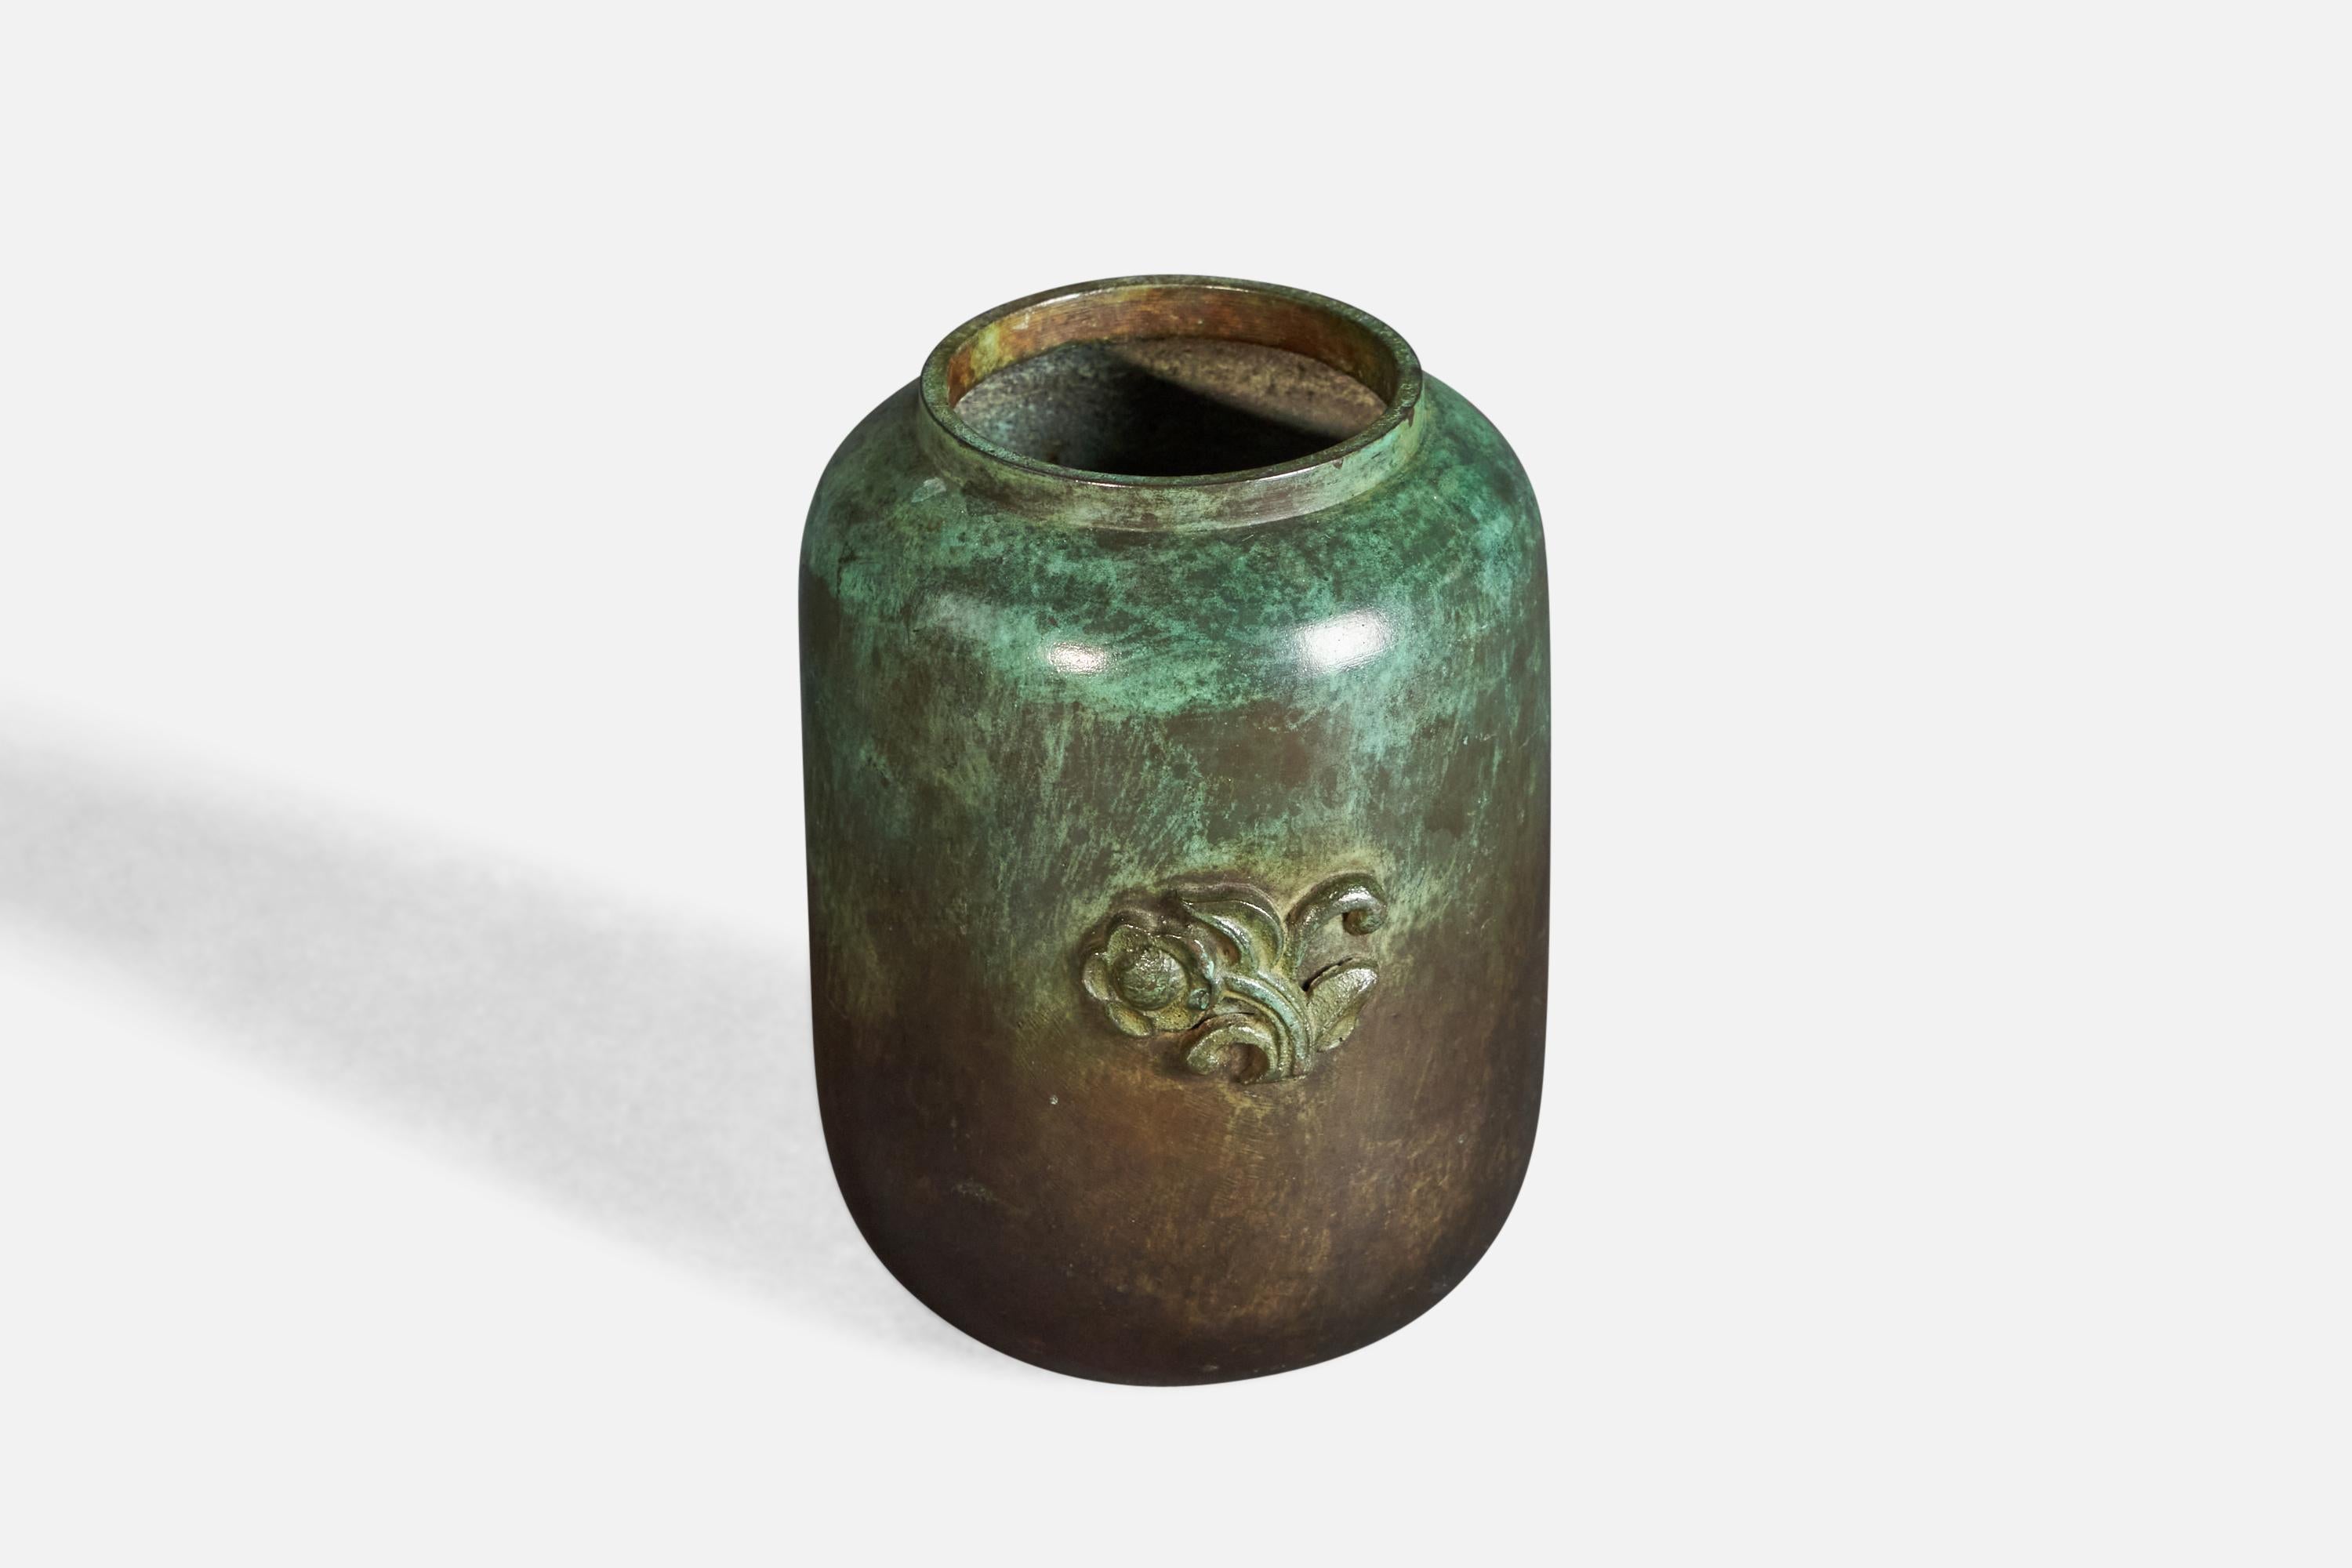 A small bronze vase, designed and produced by GAB Guldsmedsaktiebolaget, Sweden, c. 1940s.